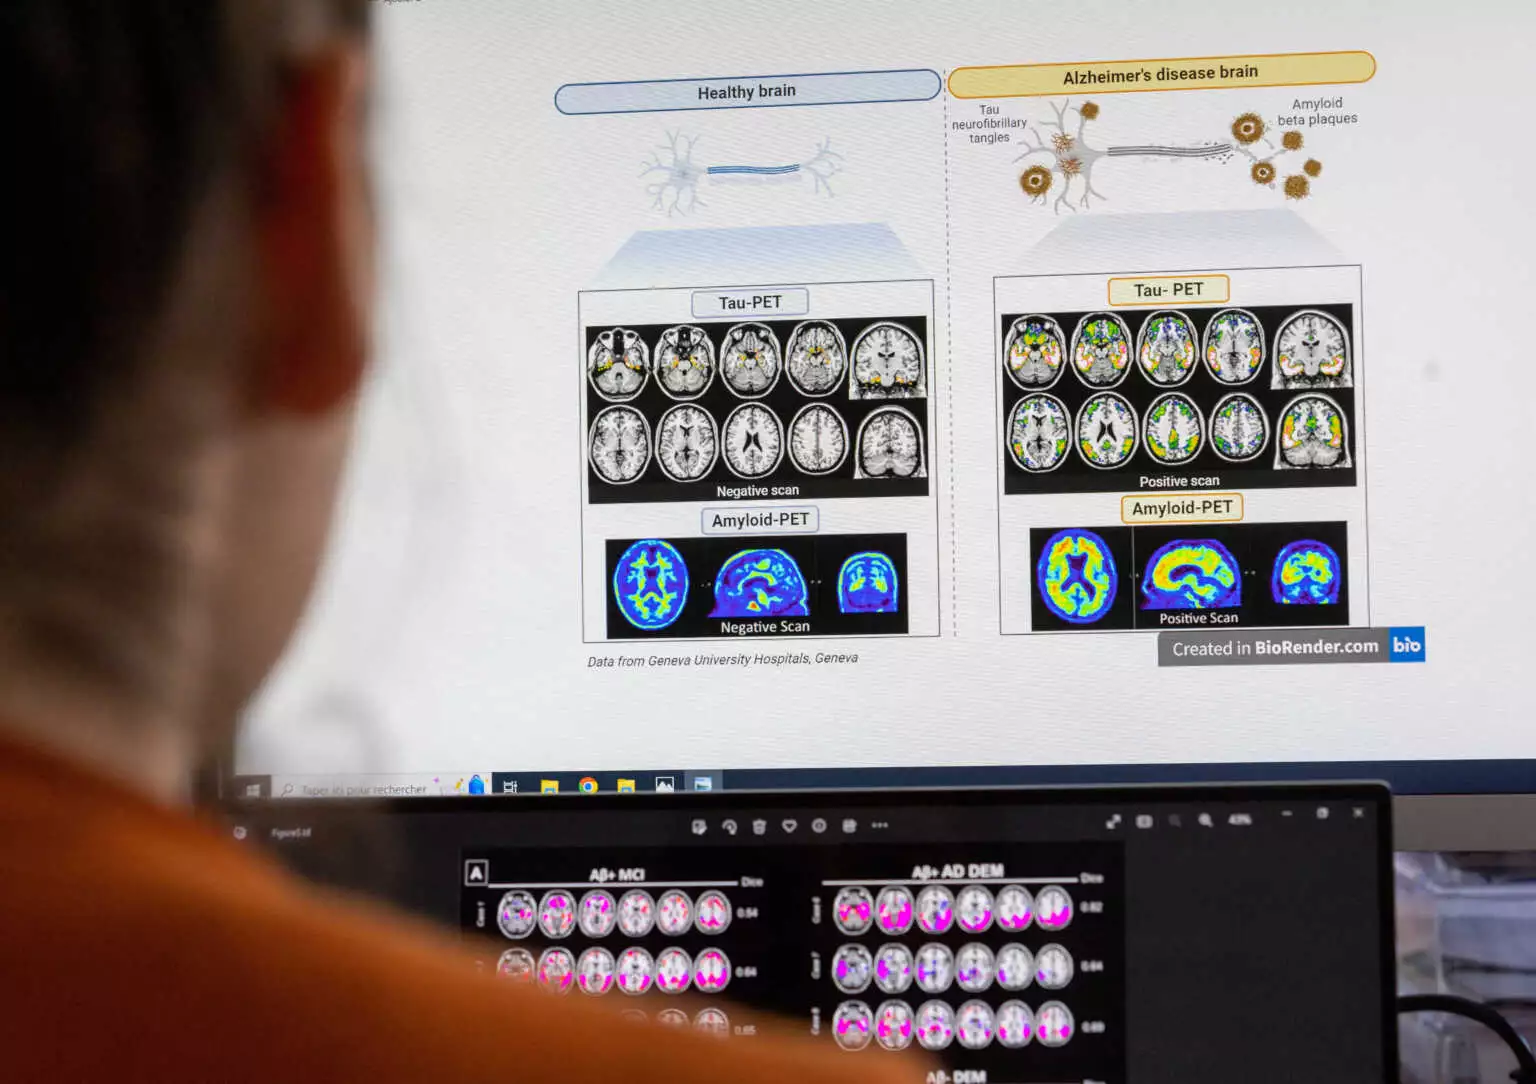 Εργαλείο τεχνητής νοημοσύνης αποκωδικοποιεί το γονιδίωμα του καρκίνου του εγκεφάλου κατά την διάρκεια επεμβάσεων